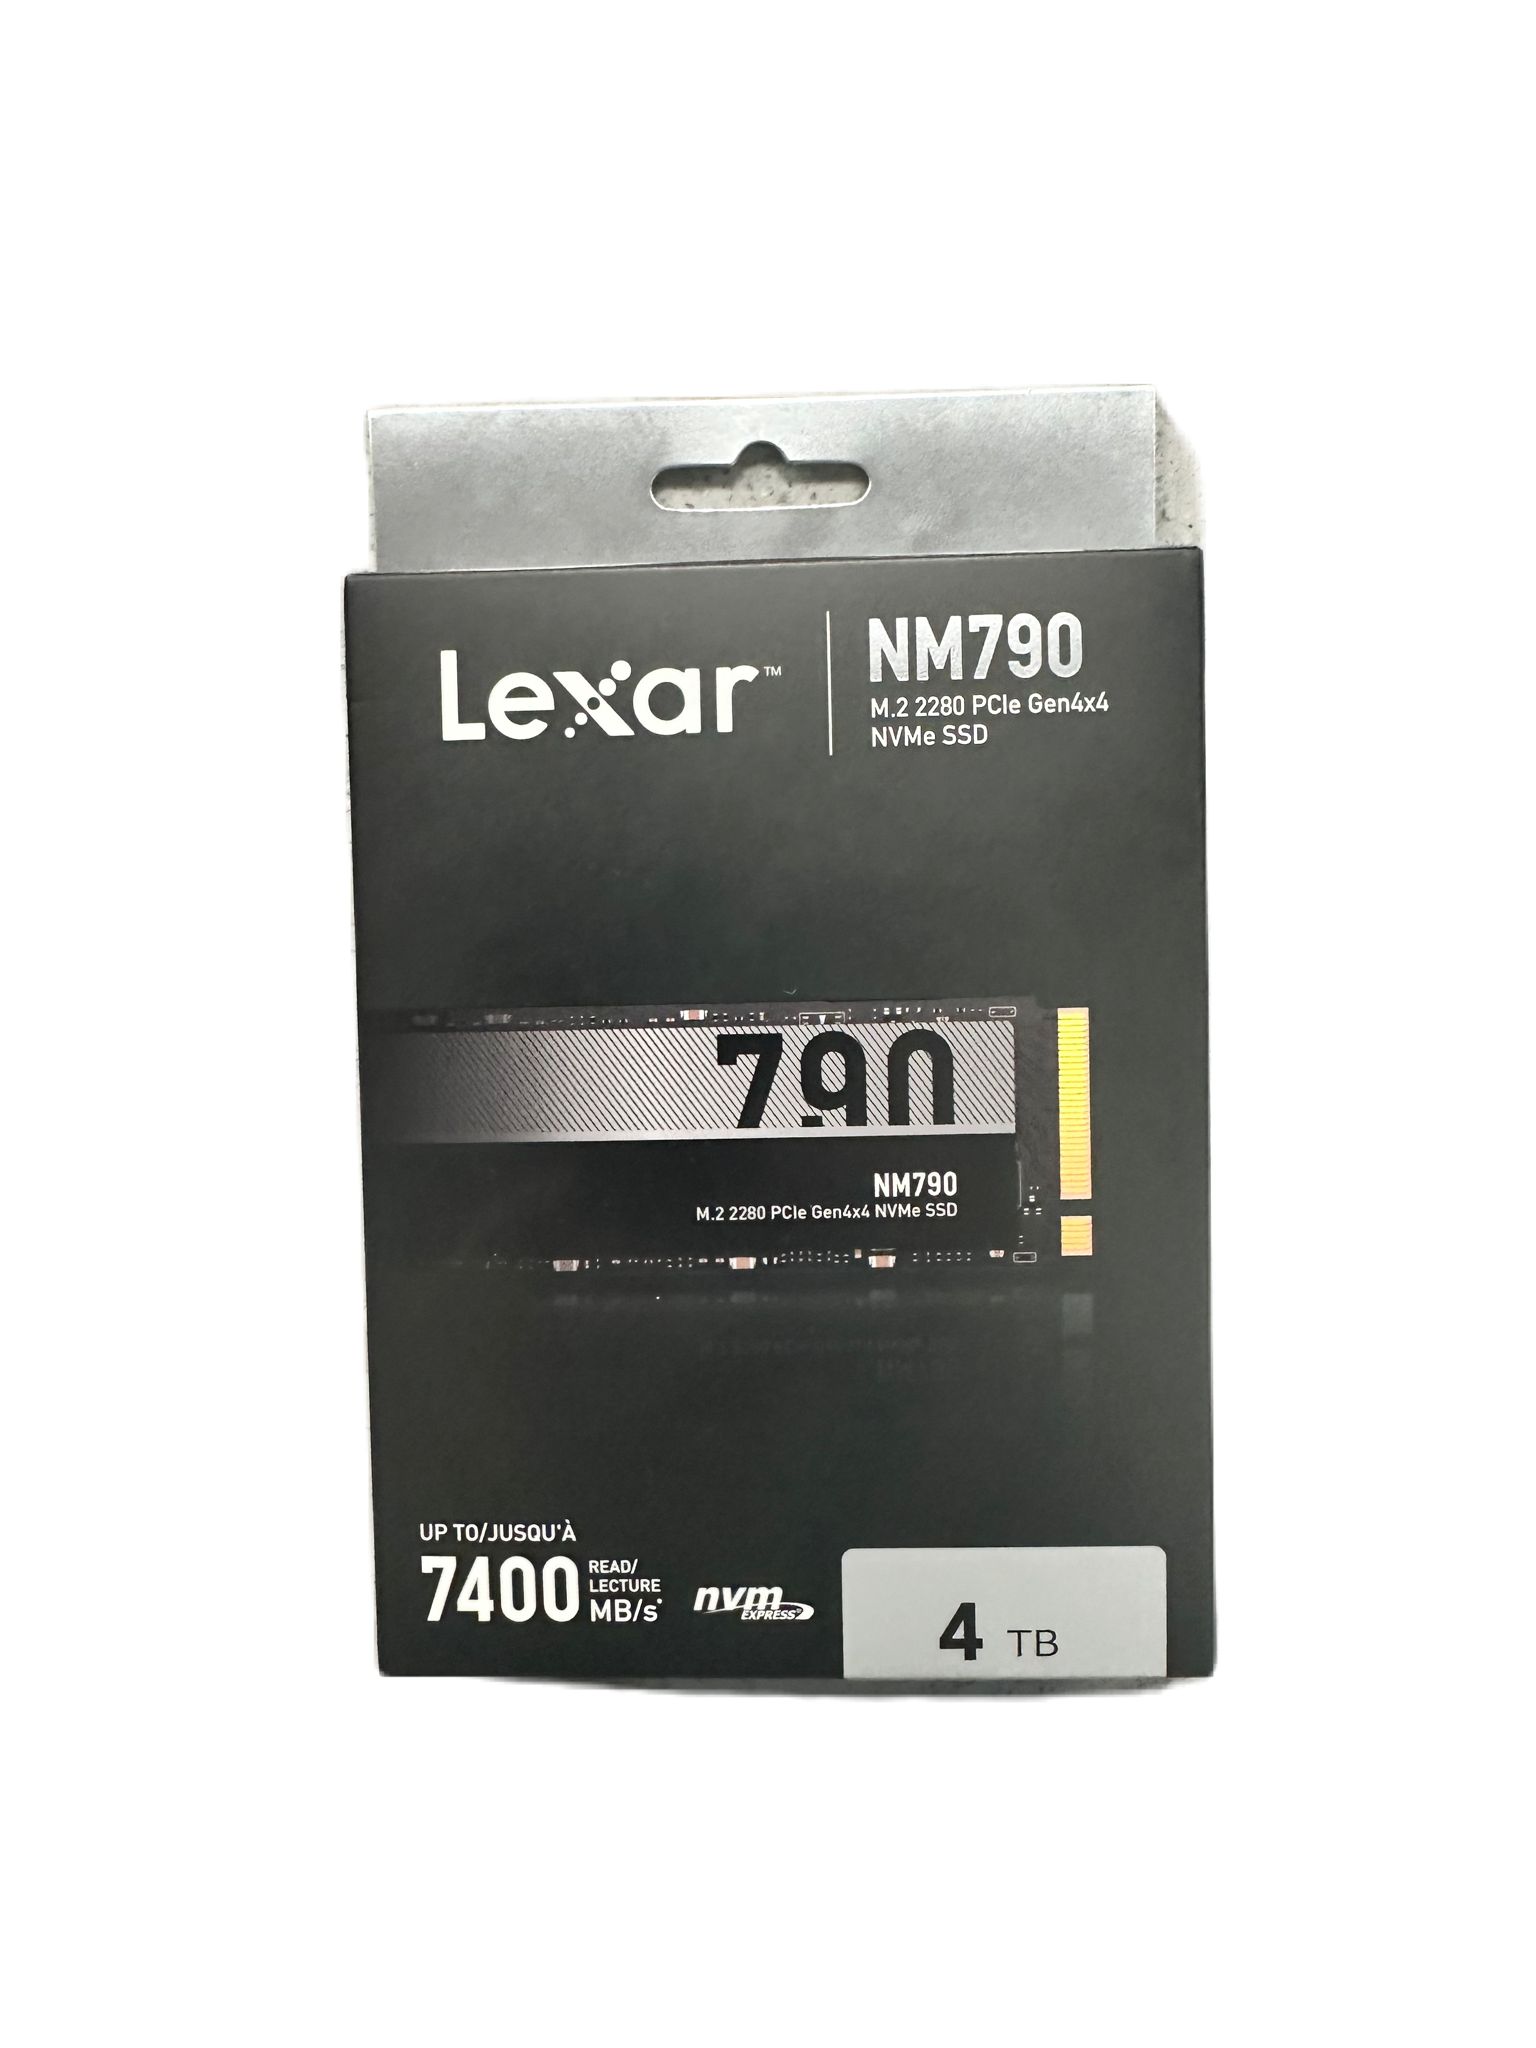 Lexar 7400 NM790 4TB SSD  INTERNAL HDD